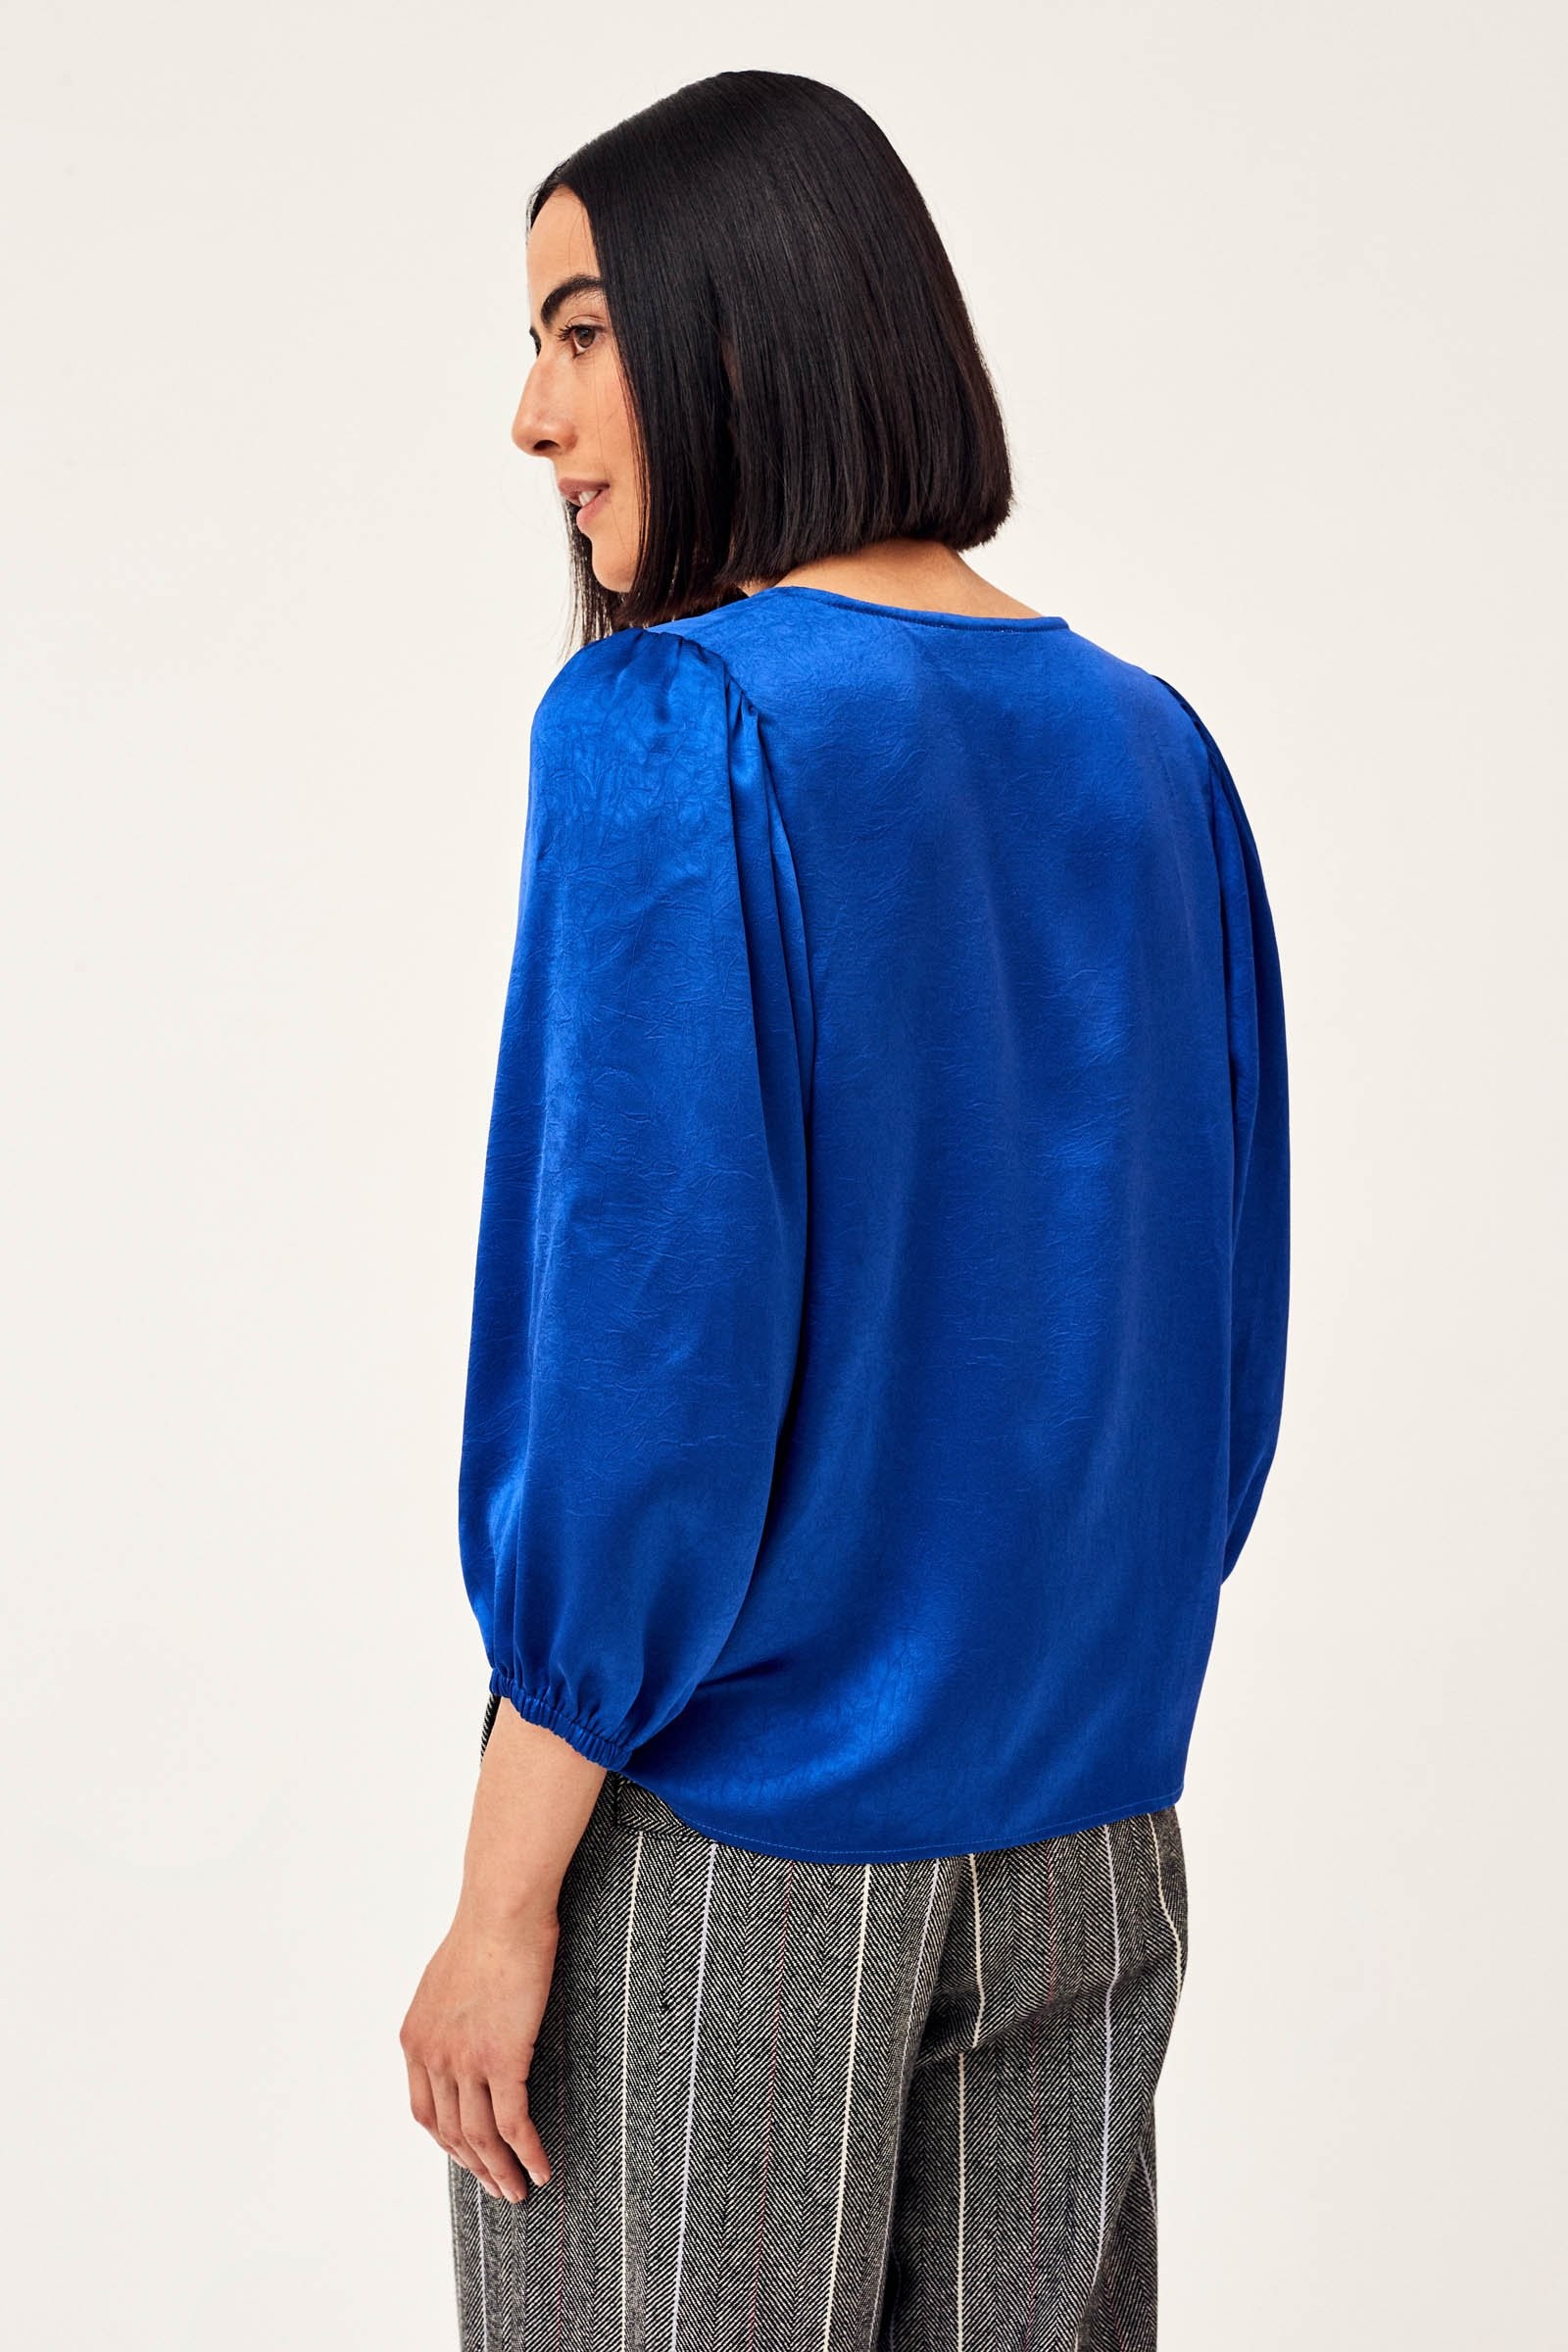 CKS Dames - RIKO - blouse lange mouwen - donkerblauw